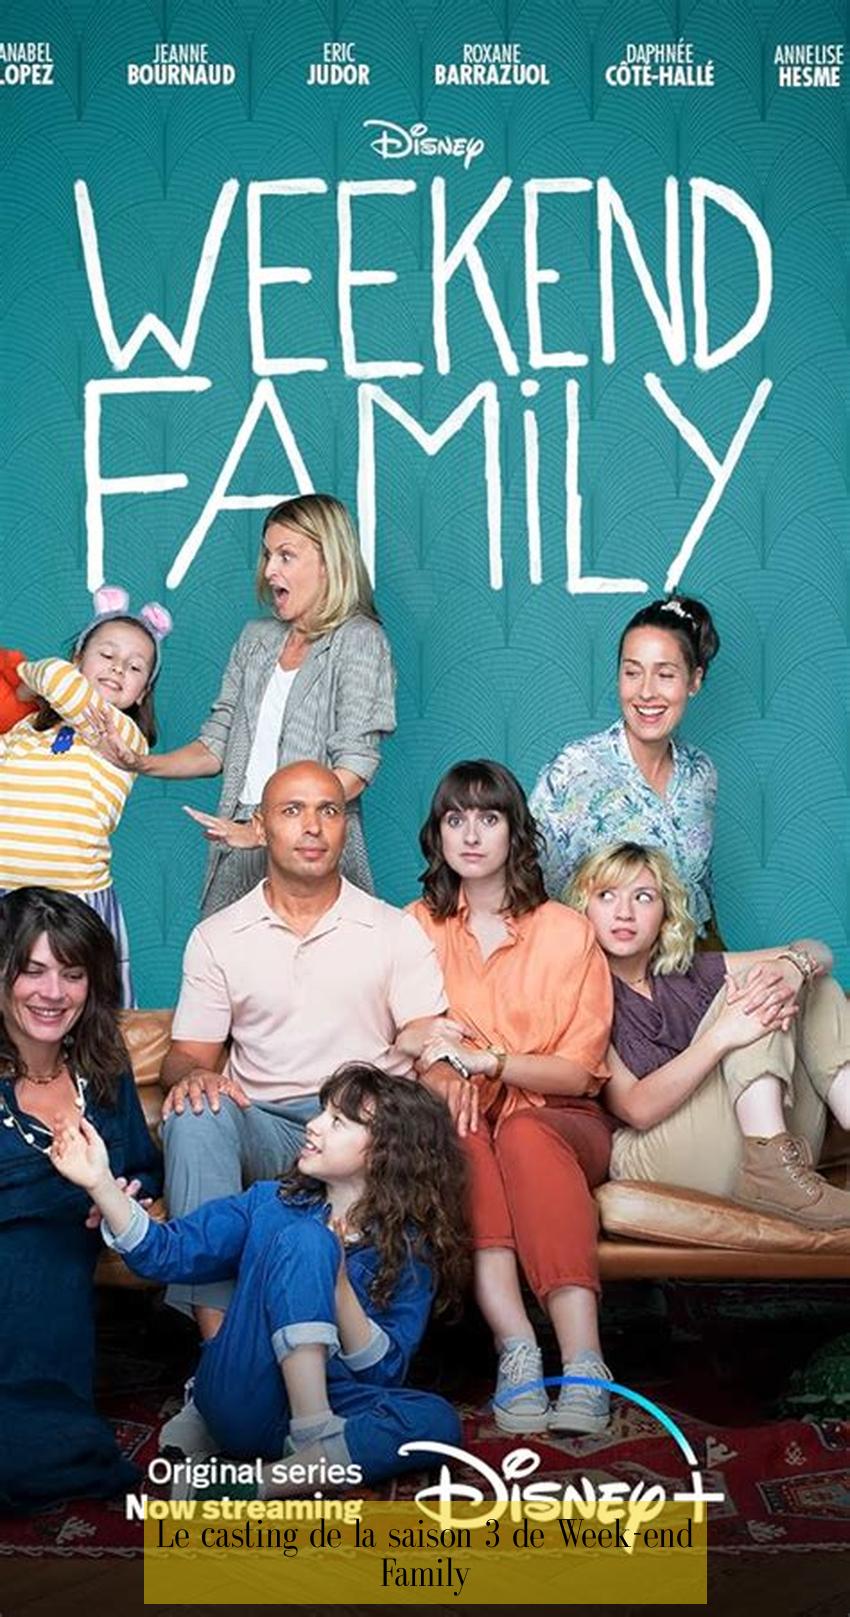 Le casting de la saison 3 de Week-end Family